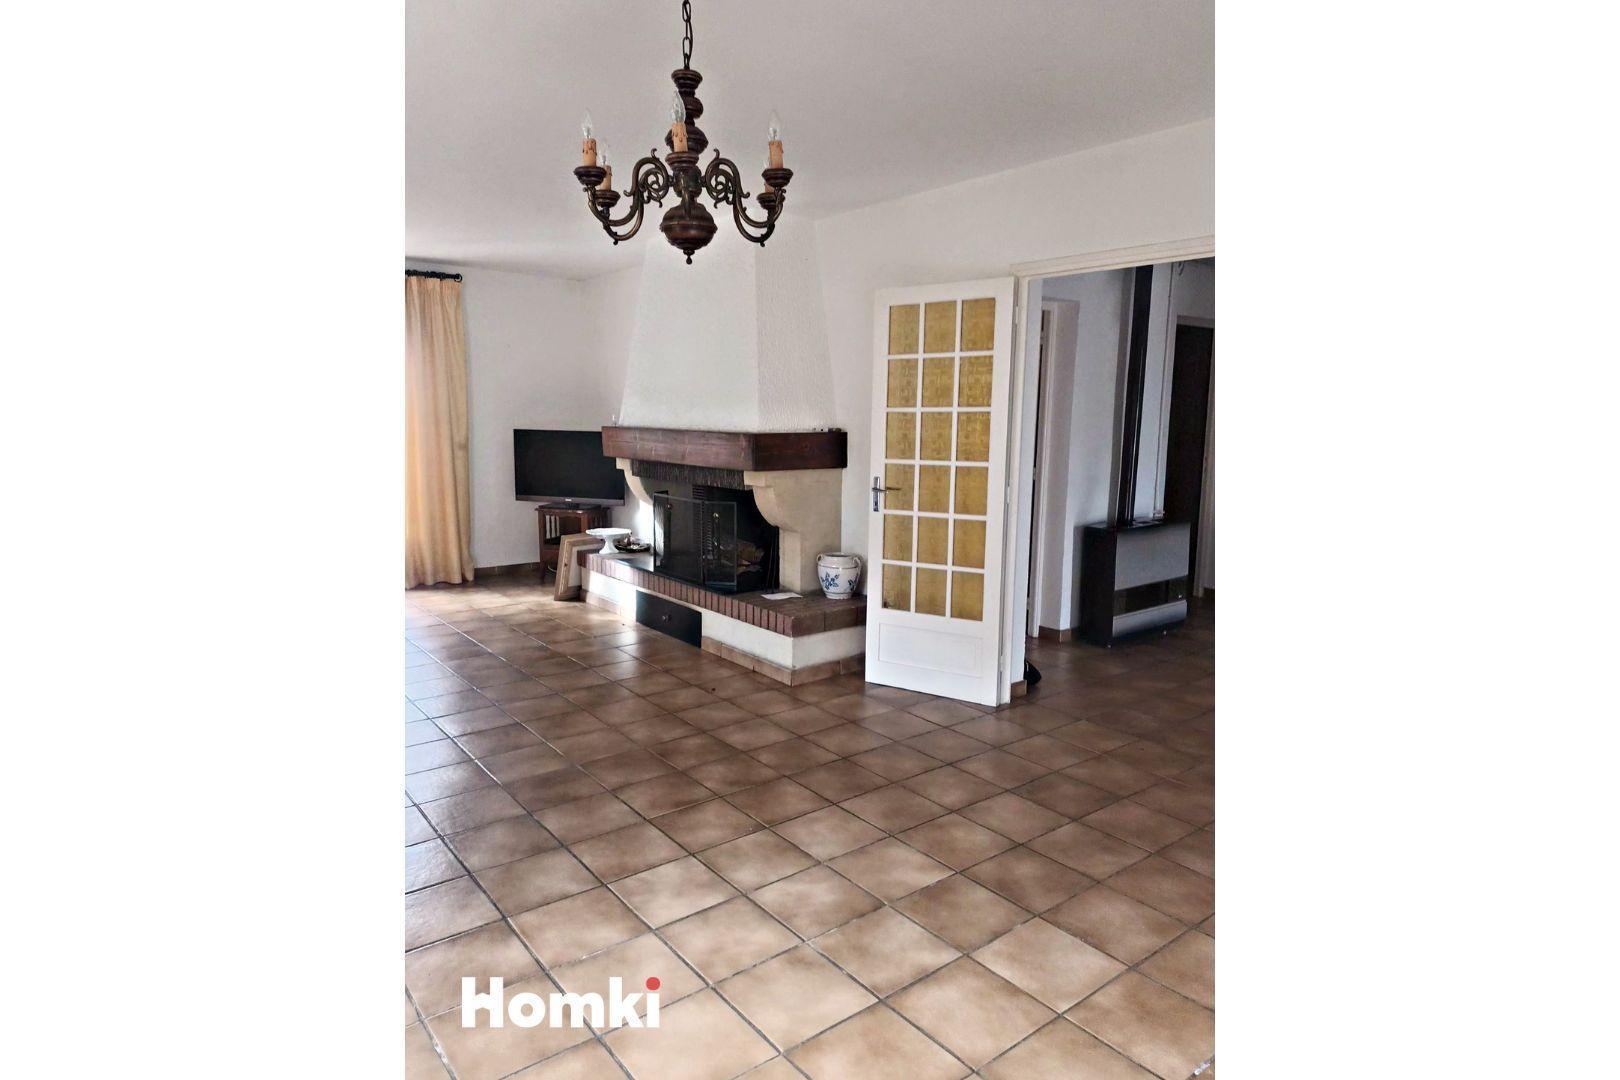 Homki - Vente Maison/villa  de 155.0 m² à Sérignan 34410